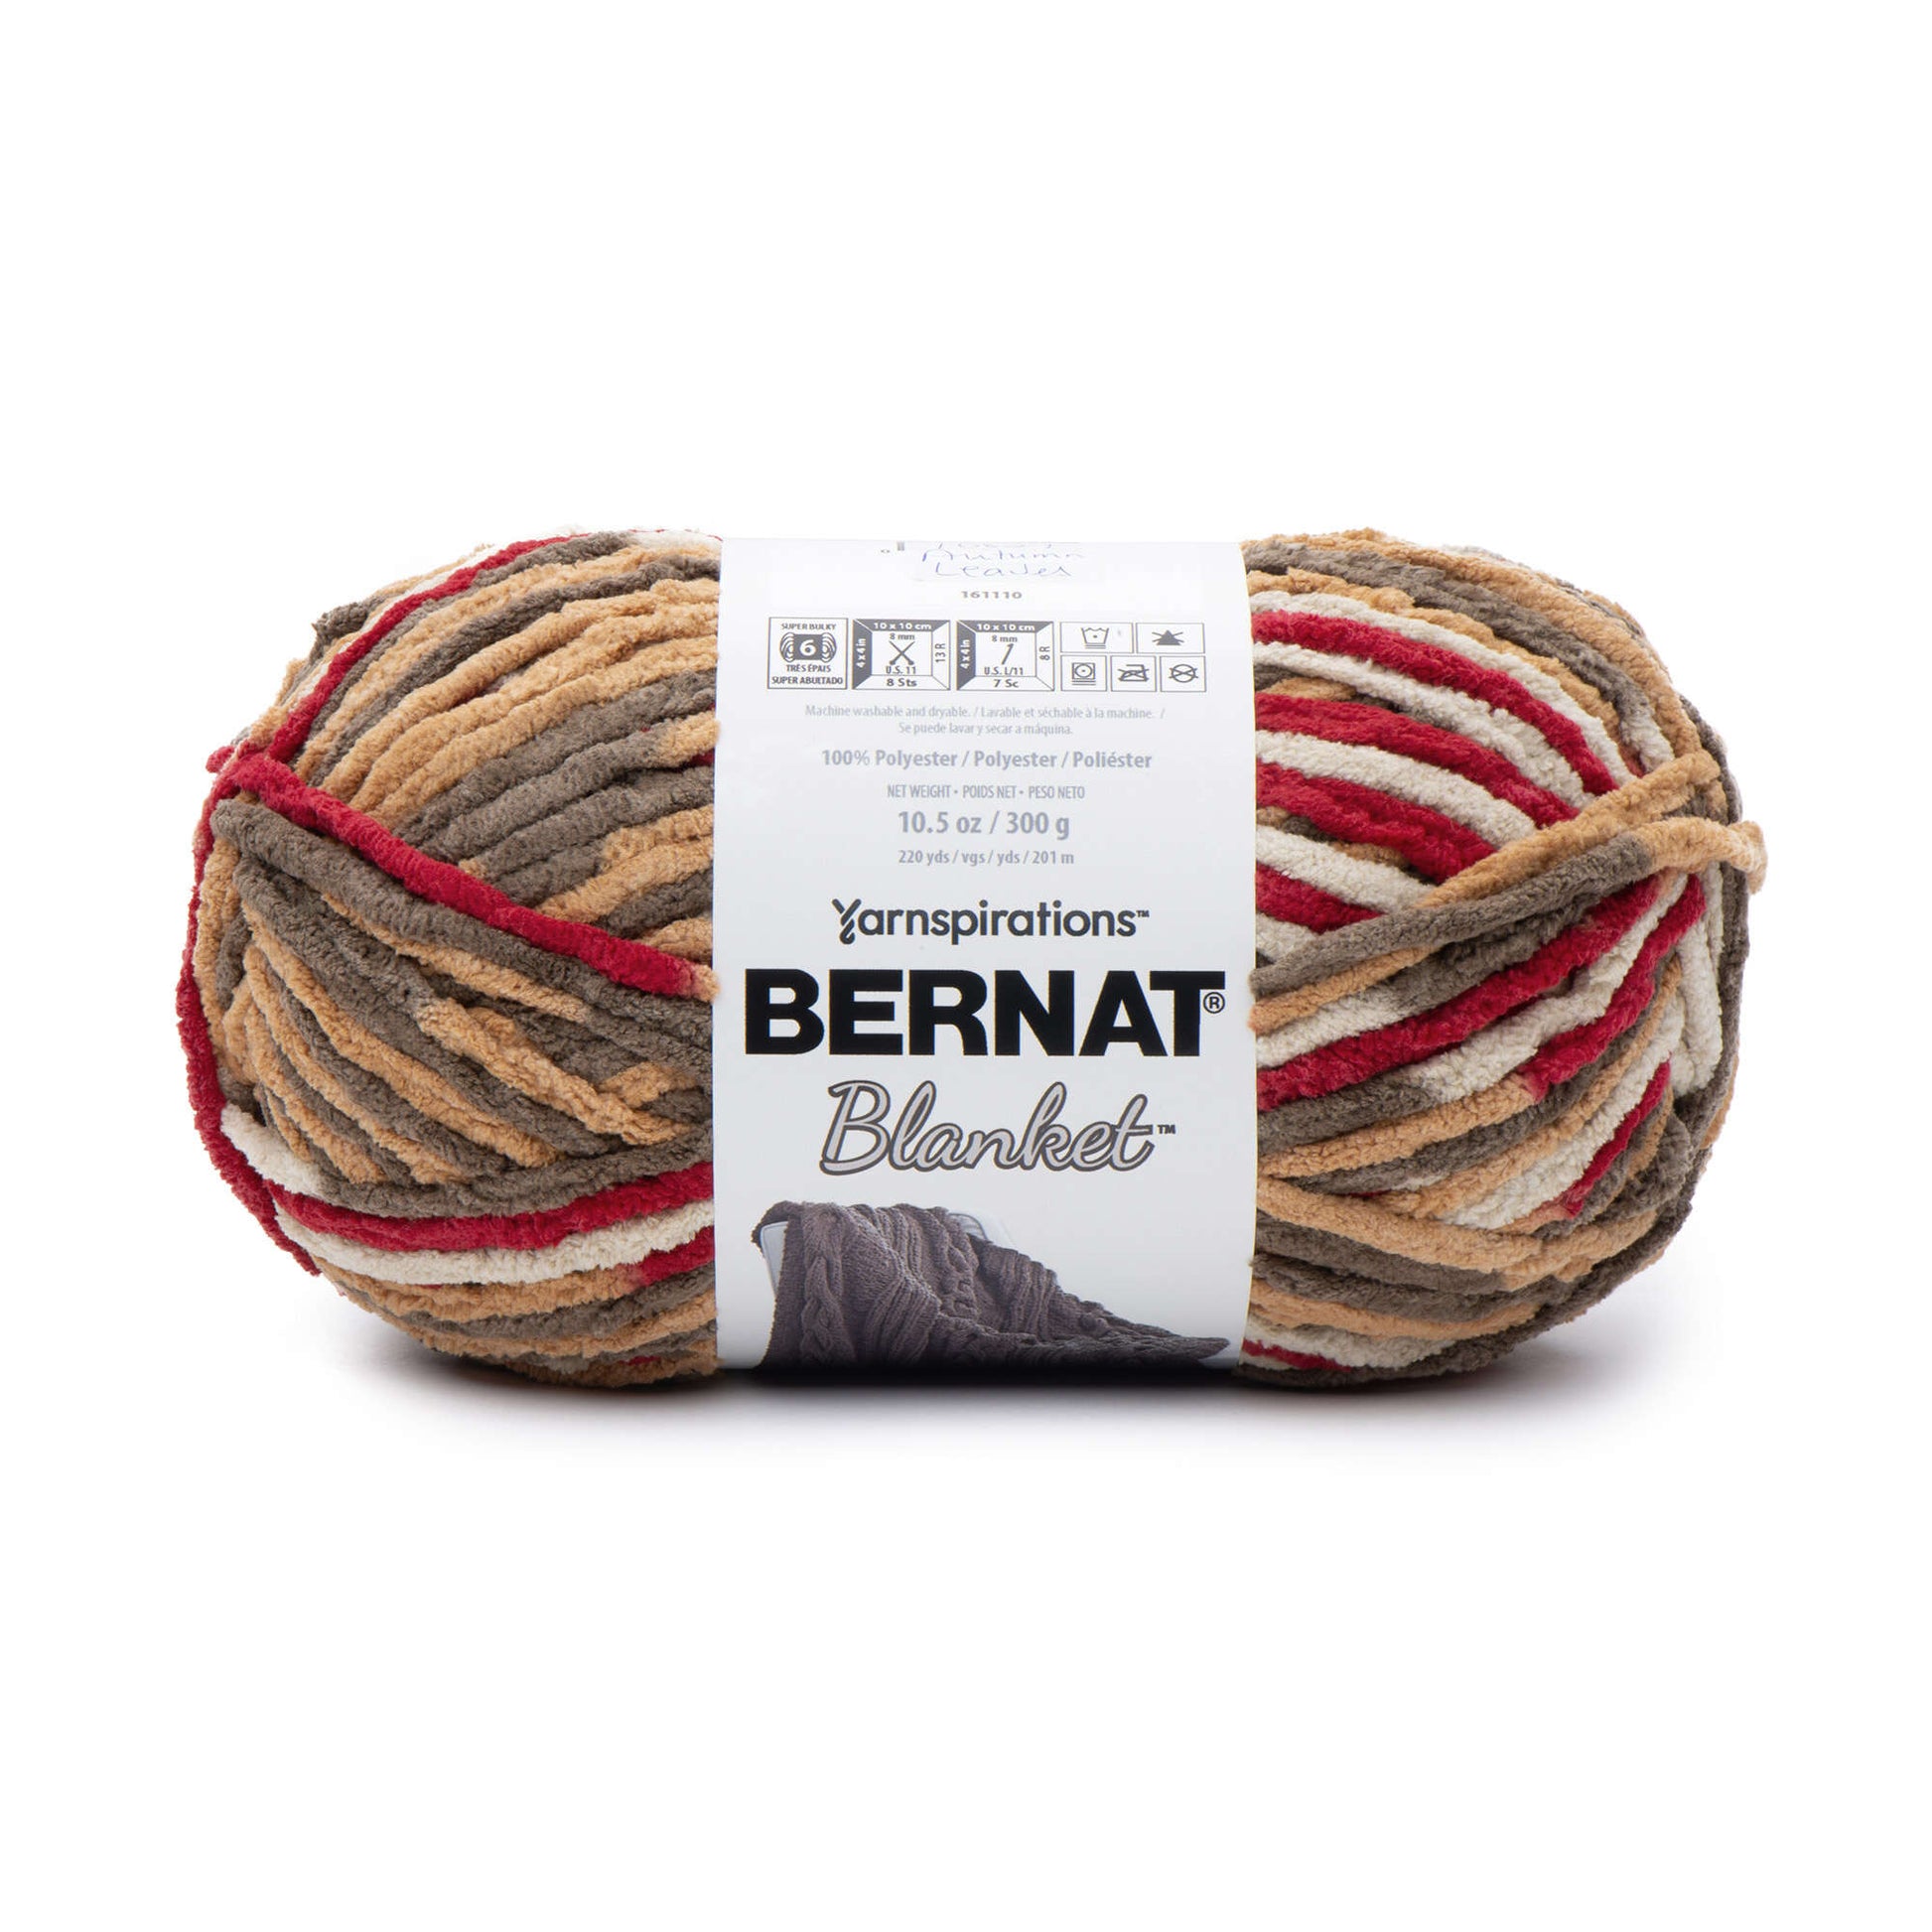 Bernat Blanket Yarn, Lilac Leaf